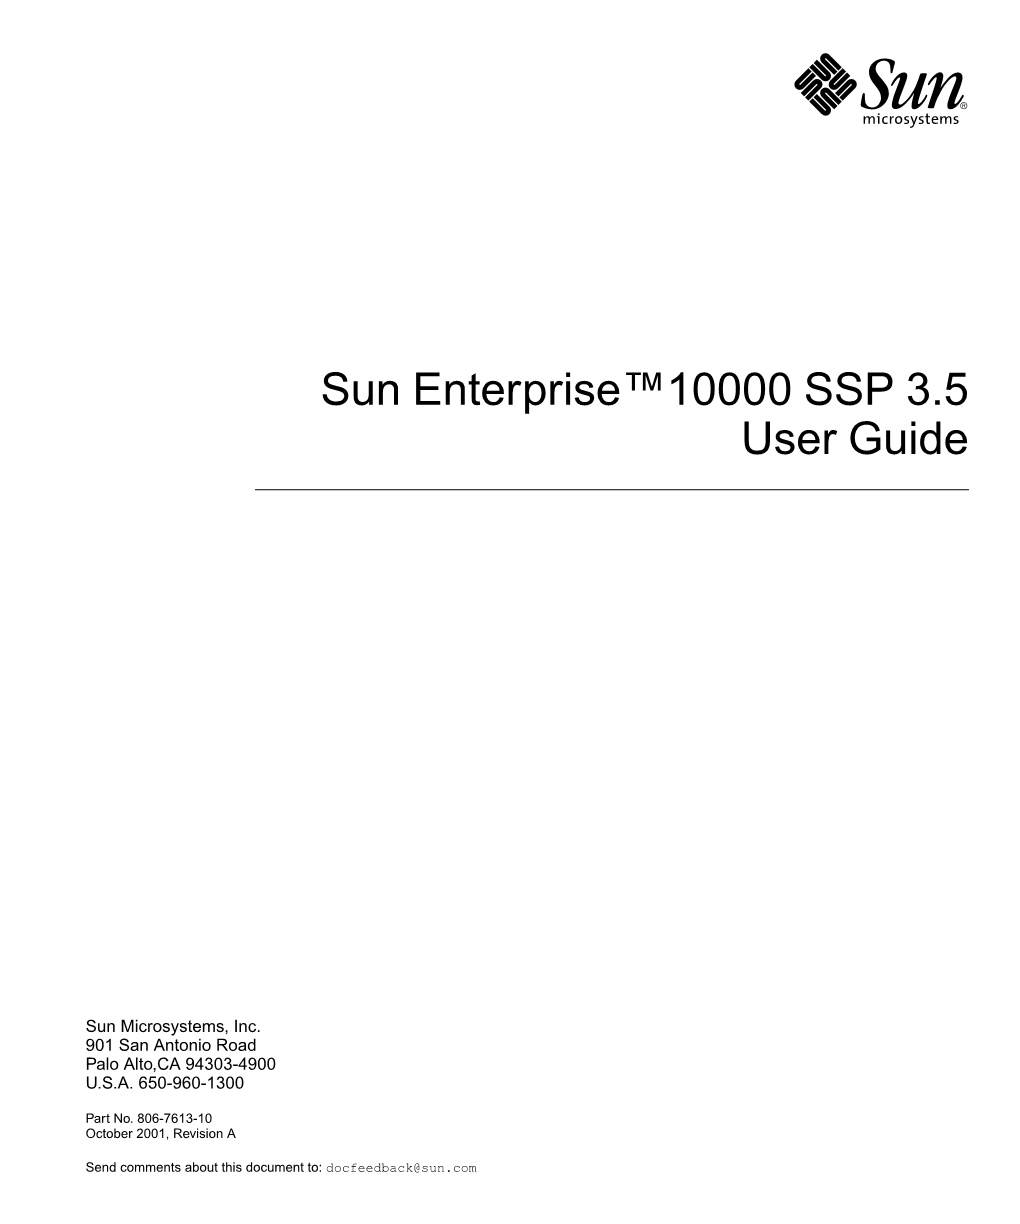 Sun Enterprise 10000 SSP 3.5 User Guide